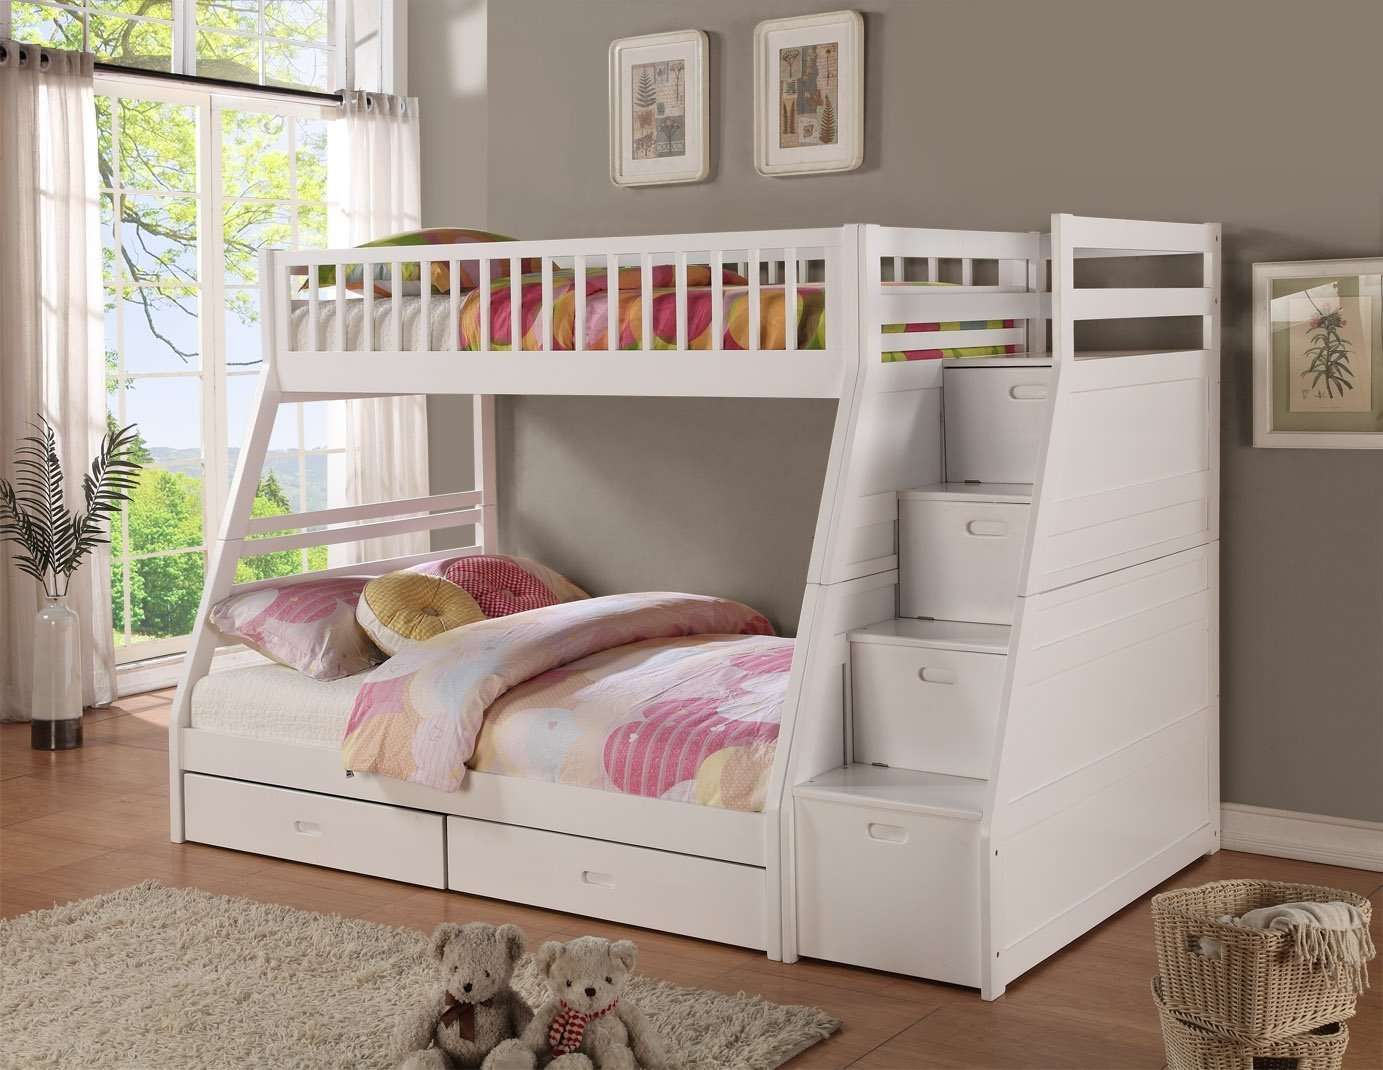 Kích thước giường tầng dành cho trẻ em từ 1 đến 5 tuổi